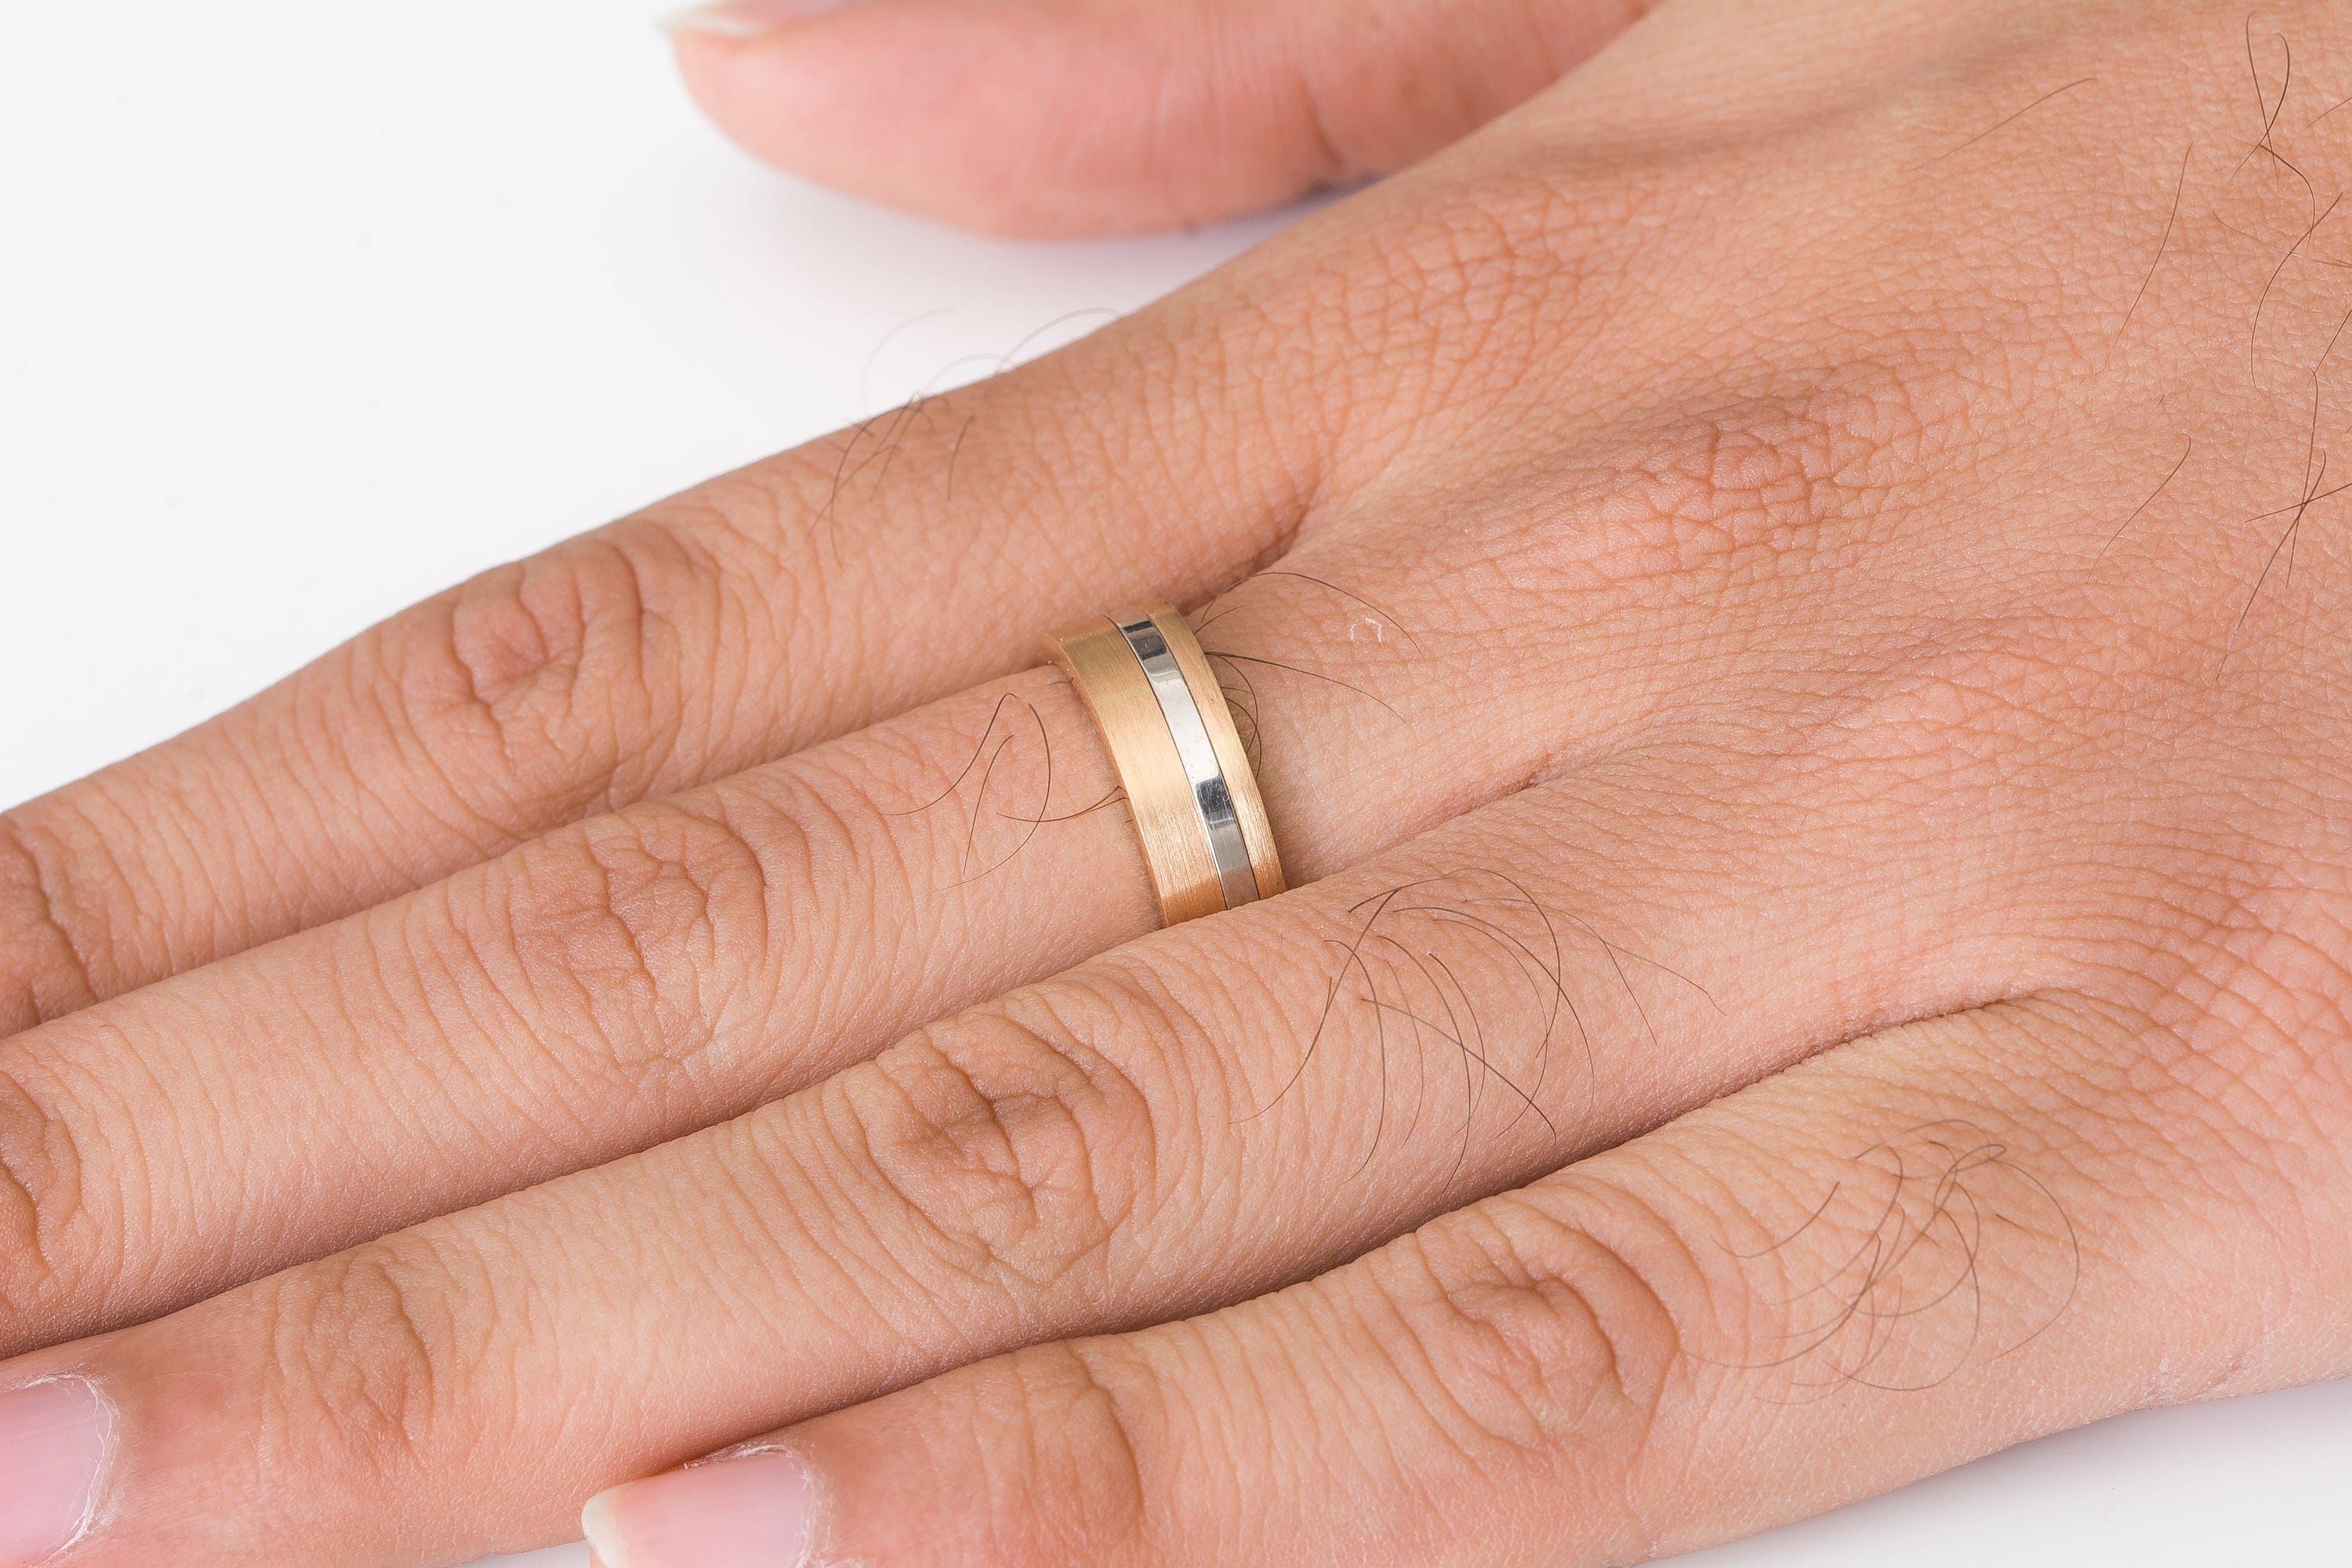 Platinum Rings For Women - Buy Platinum Rings For Women Online | Myntra